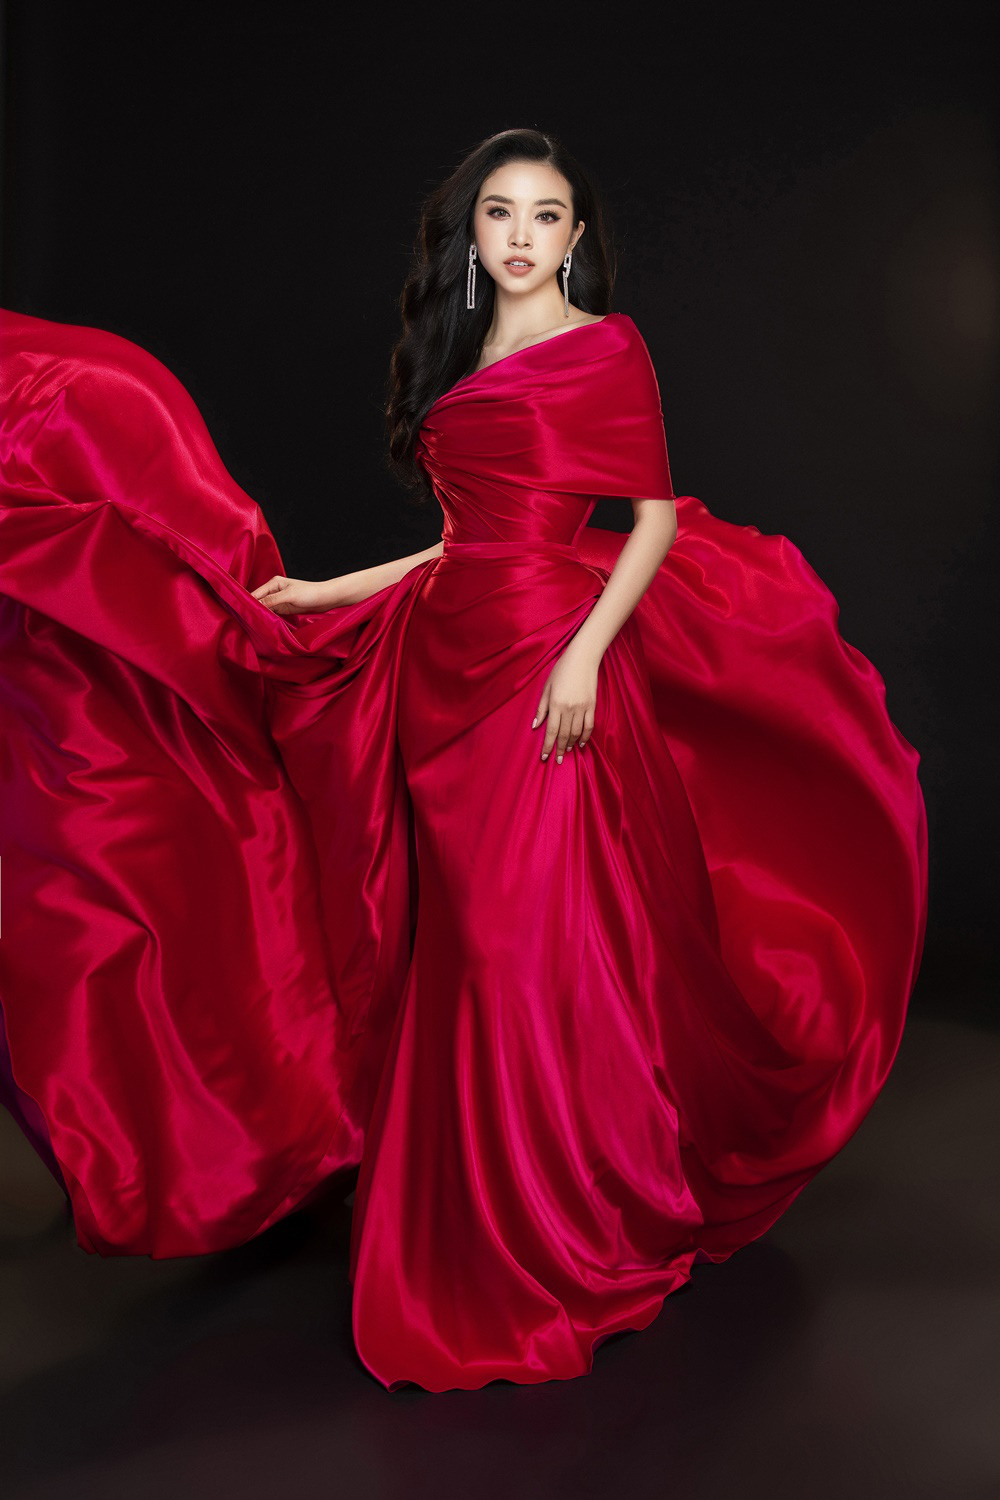 Hoa hậu Việt Nam 2020 chính thức khởi động, bộ ba Tiểu Vy - Thúy An - Phương Nga đẹp quyền lực sau gần 2 năm đăng quang - Ảnh 9.